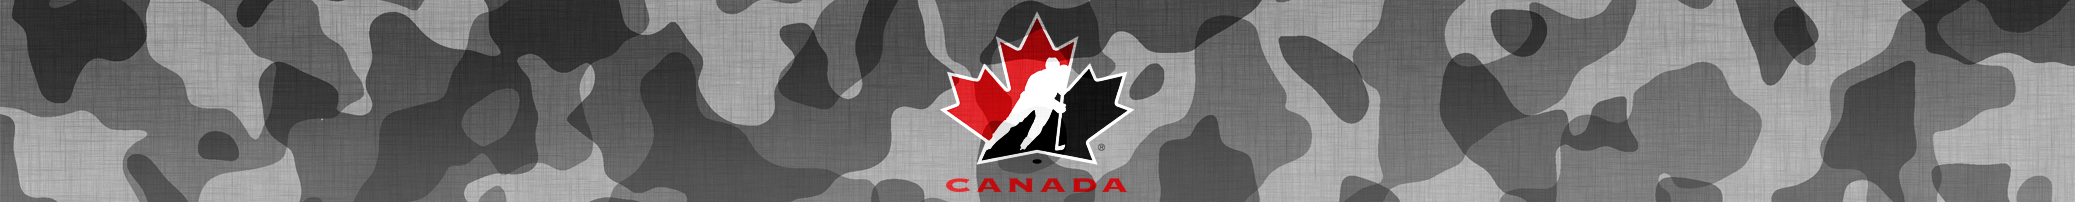 Collection Équipe Canada